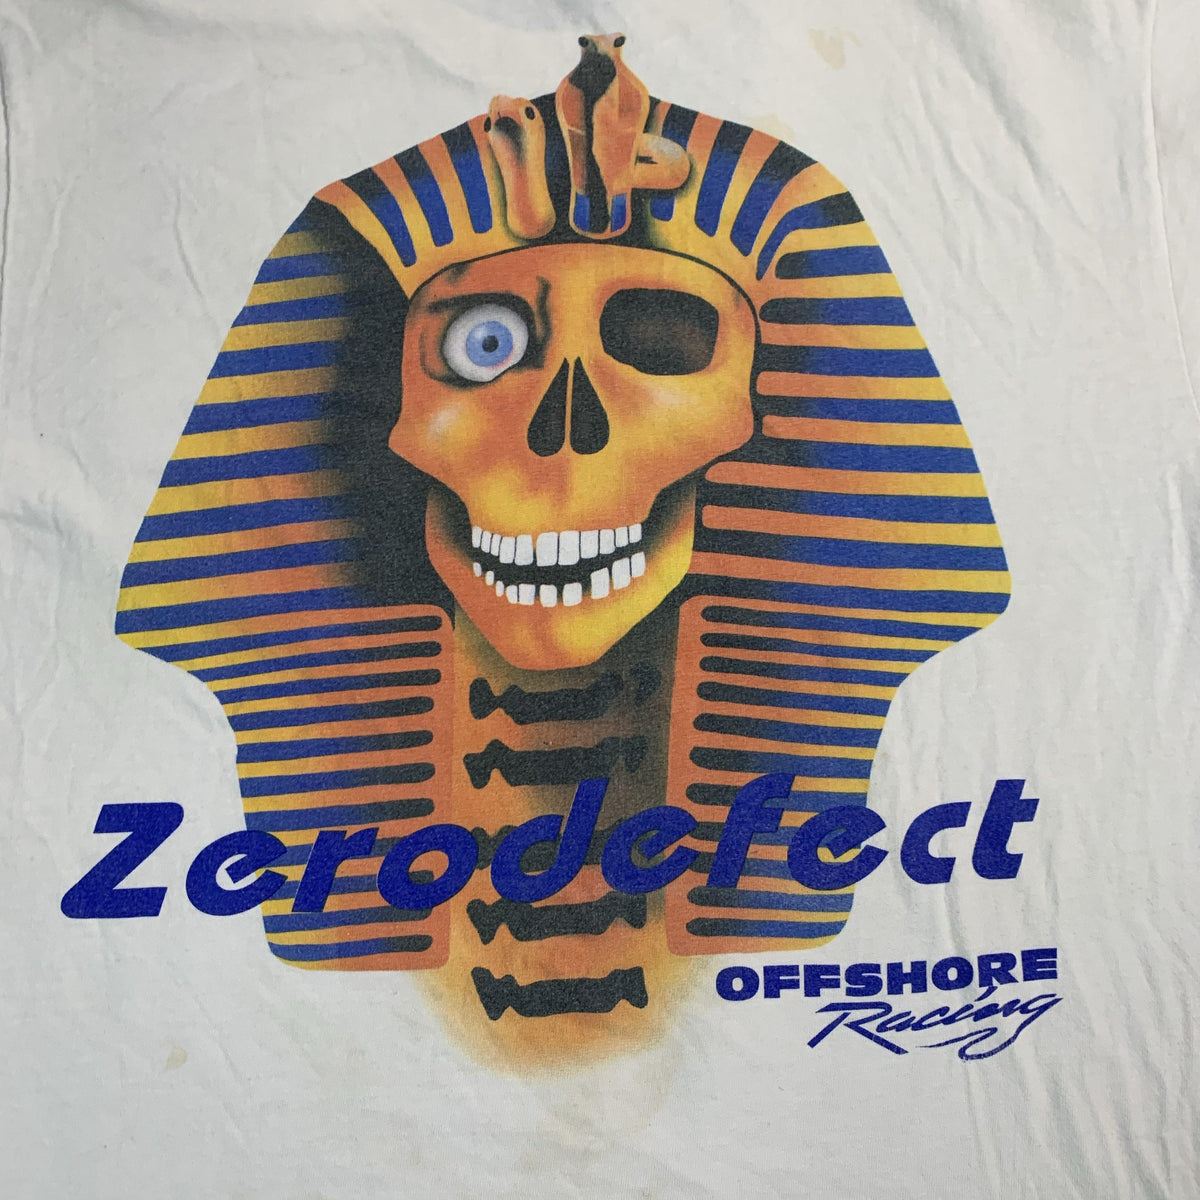 Vintage Zerodefect 63 “Powerboat” Racing T-Shirt - jointcustodydc